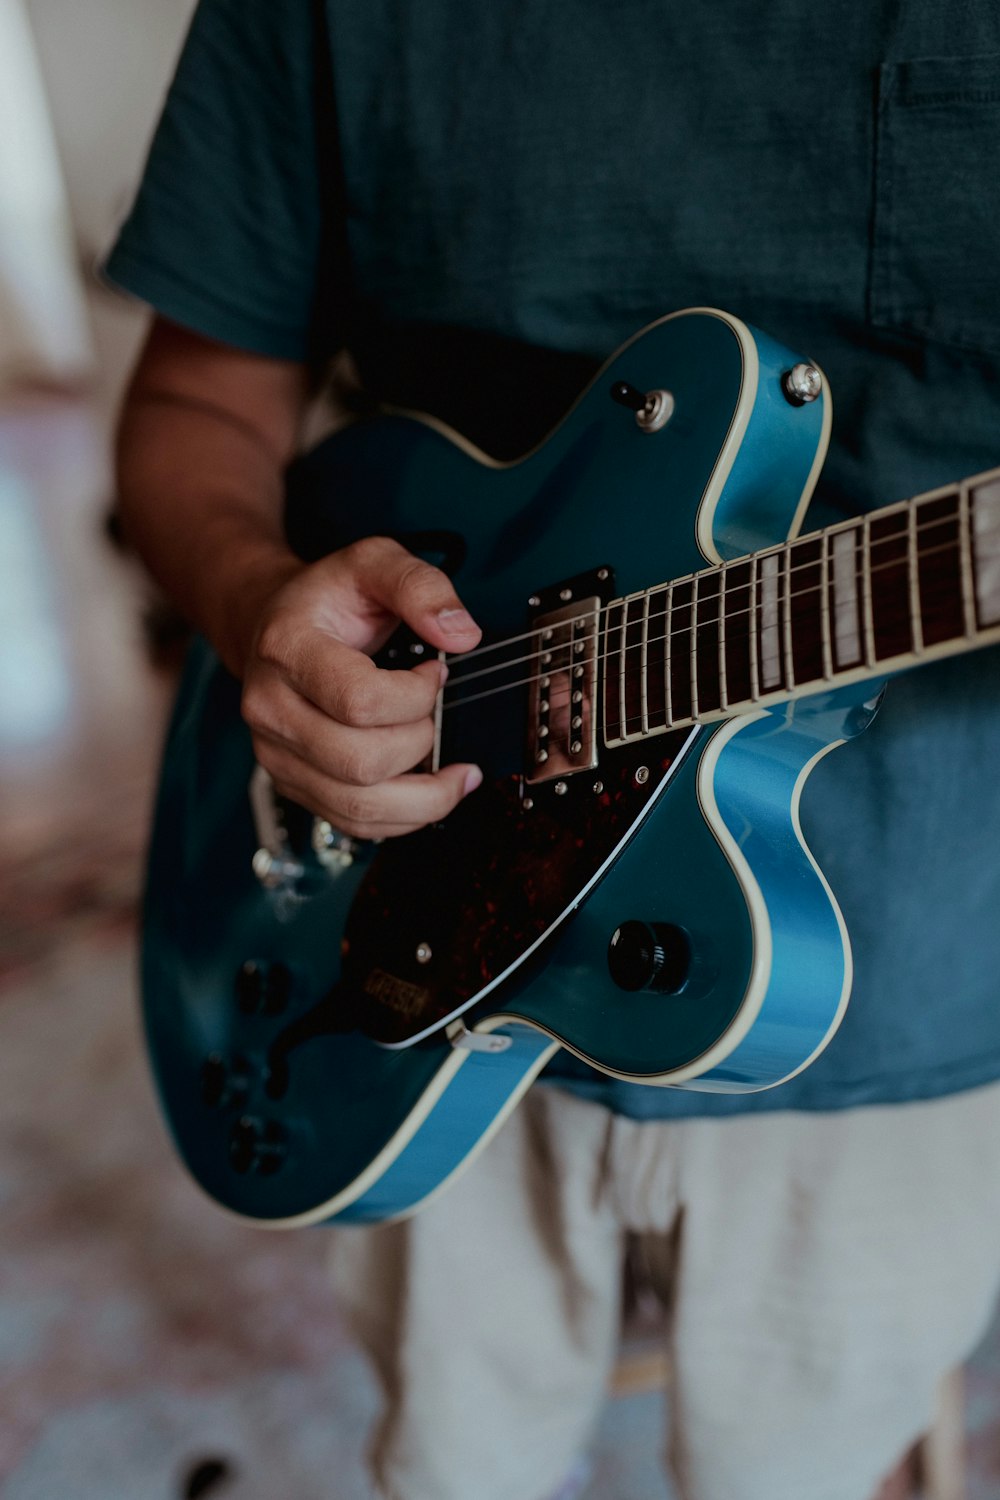 Persona tocando la guitarra eléctrica Stratocaster azul y blanca